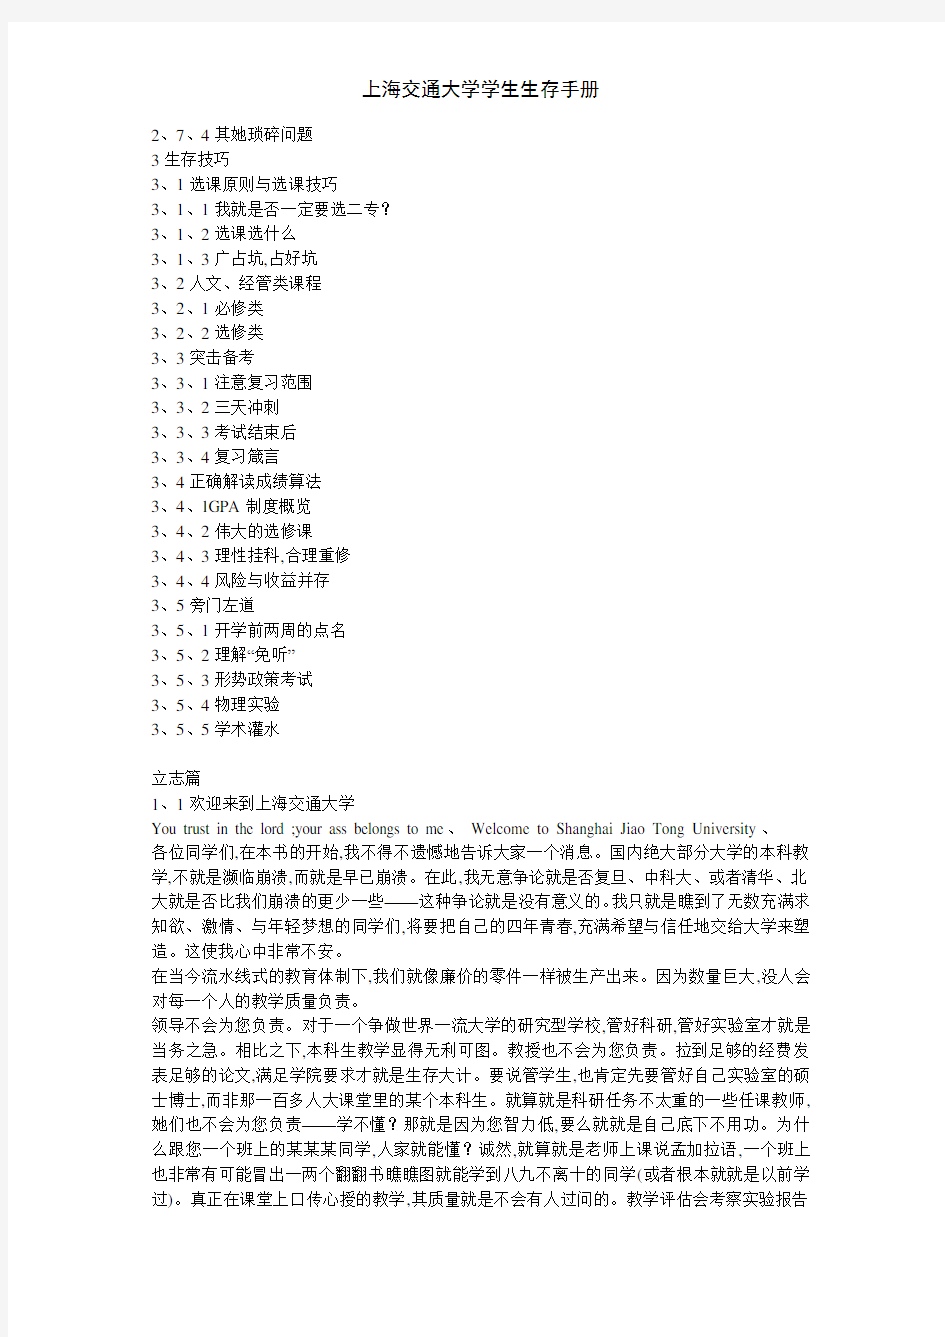 上海交通大学学生生存手册